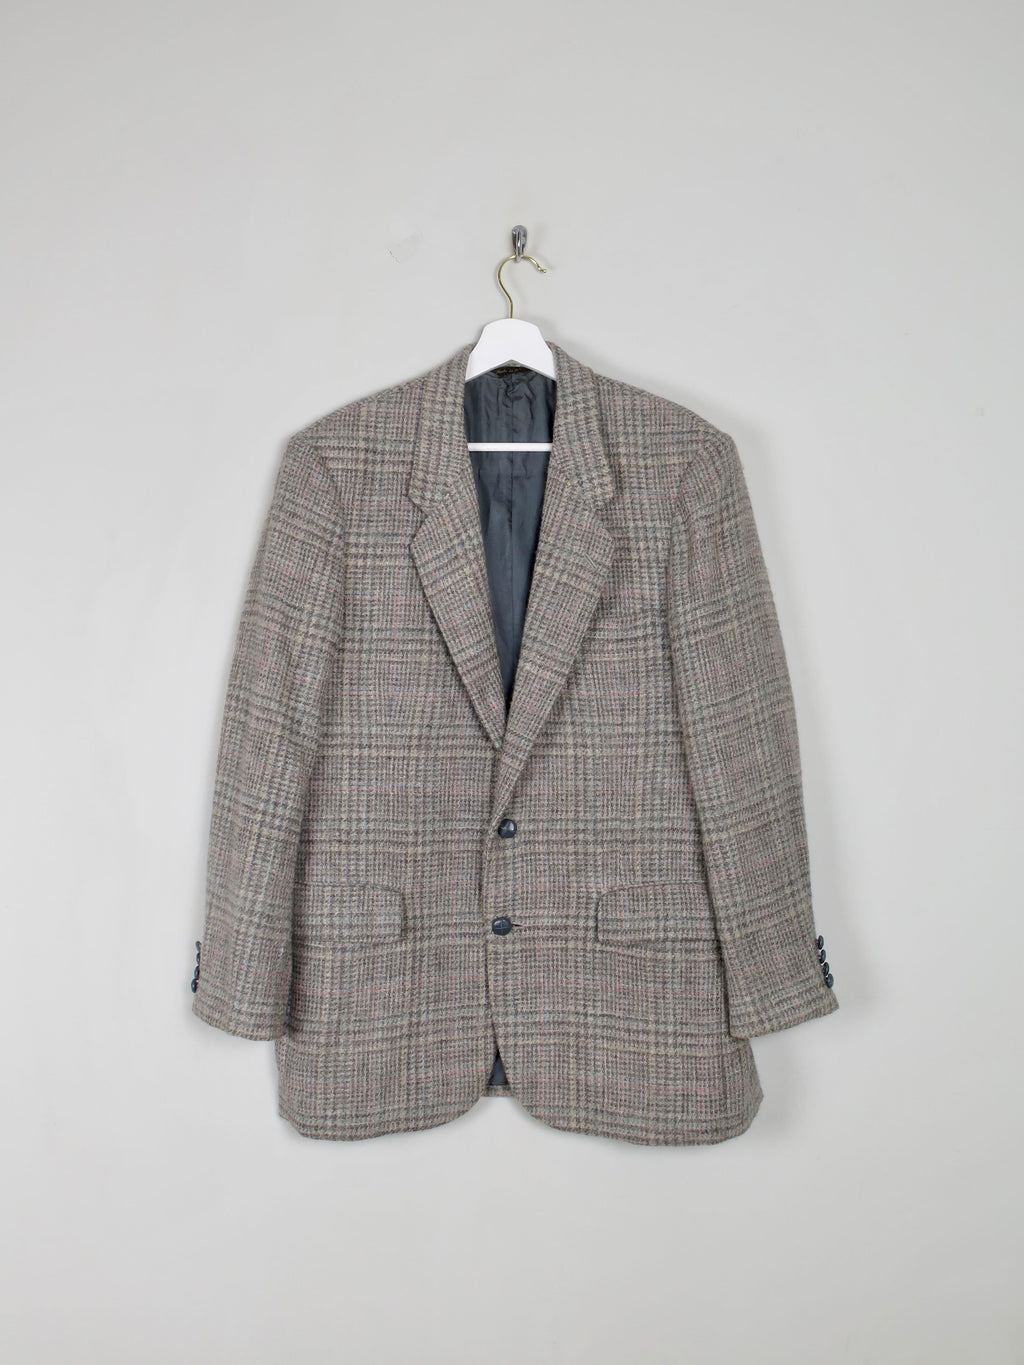 Mens's Vintage Tweed Jacket 38/40" - The Harlequin